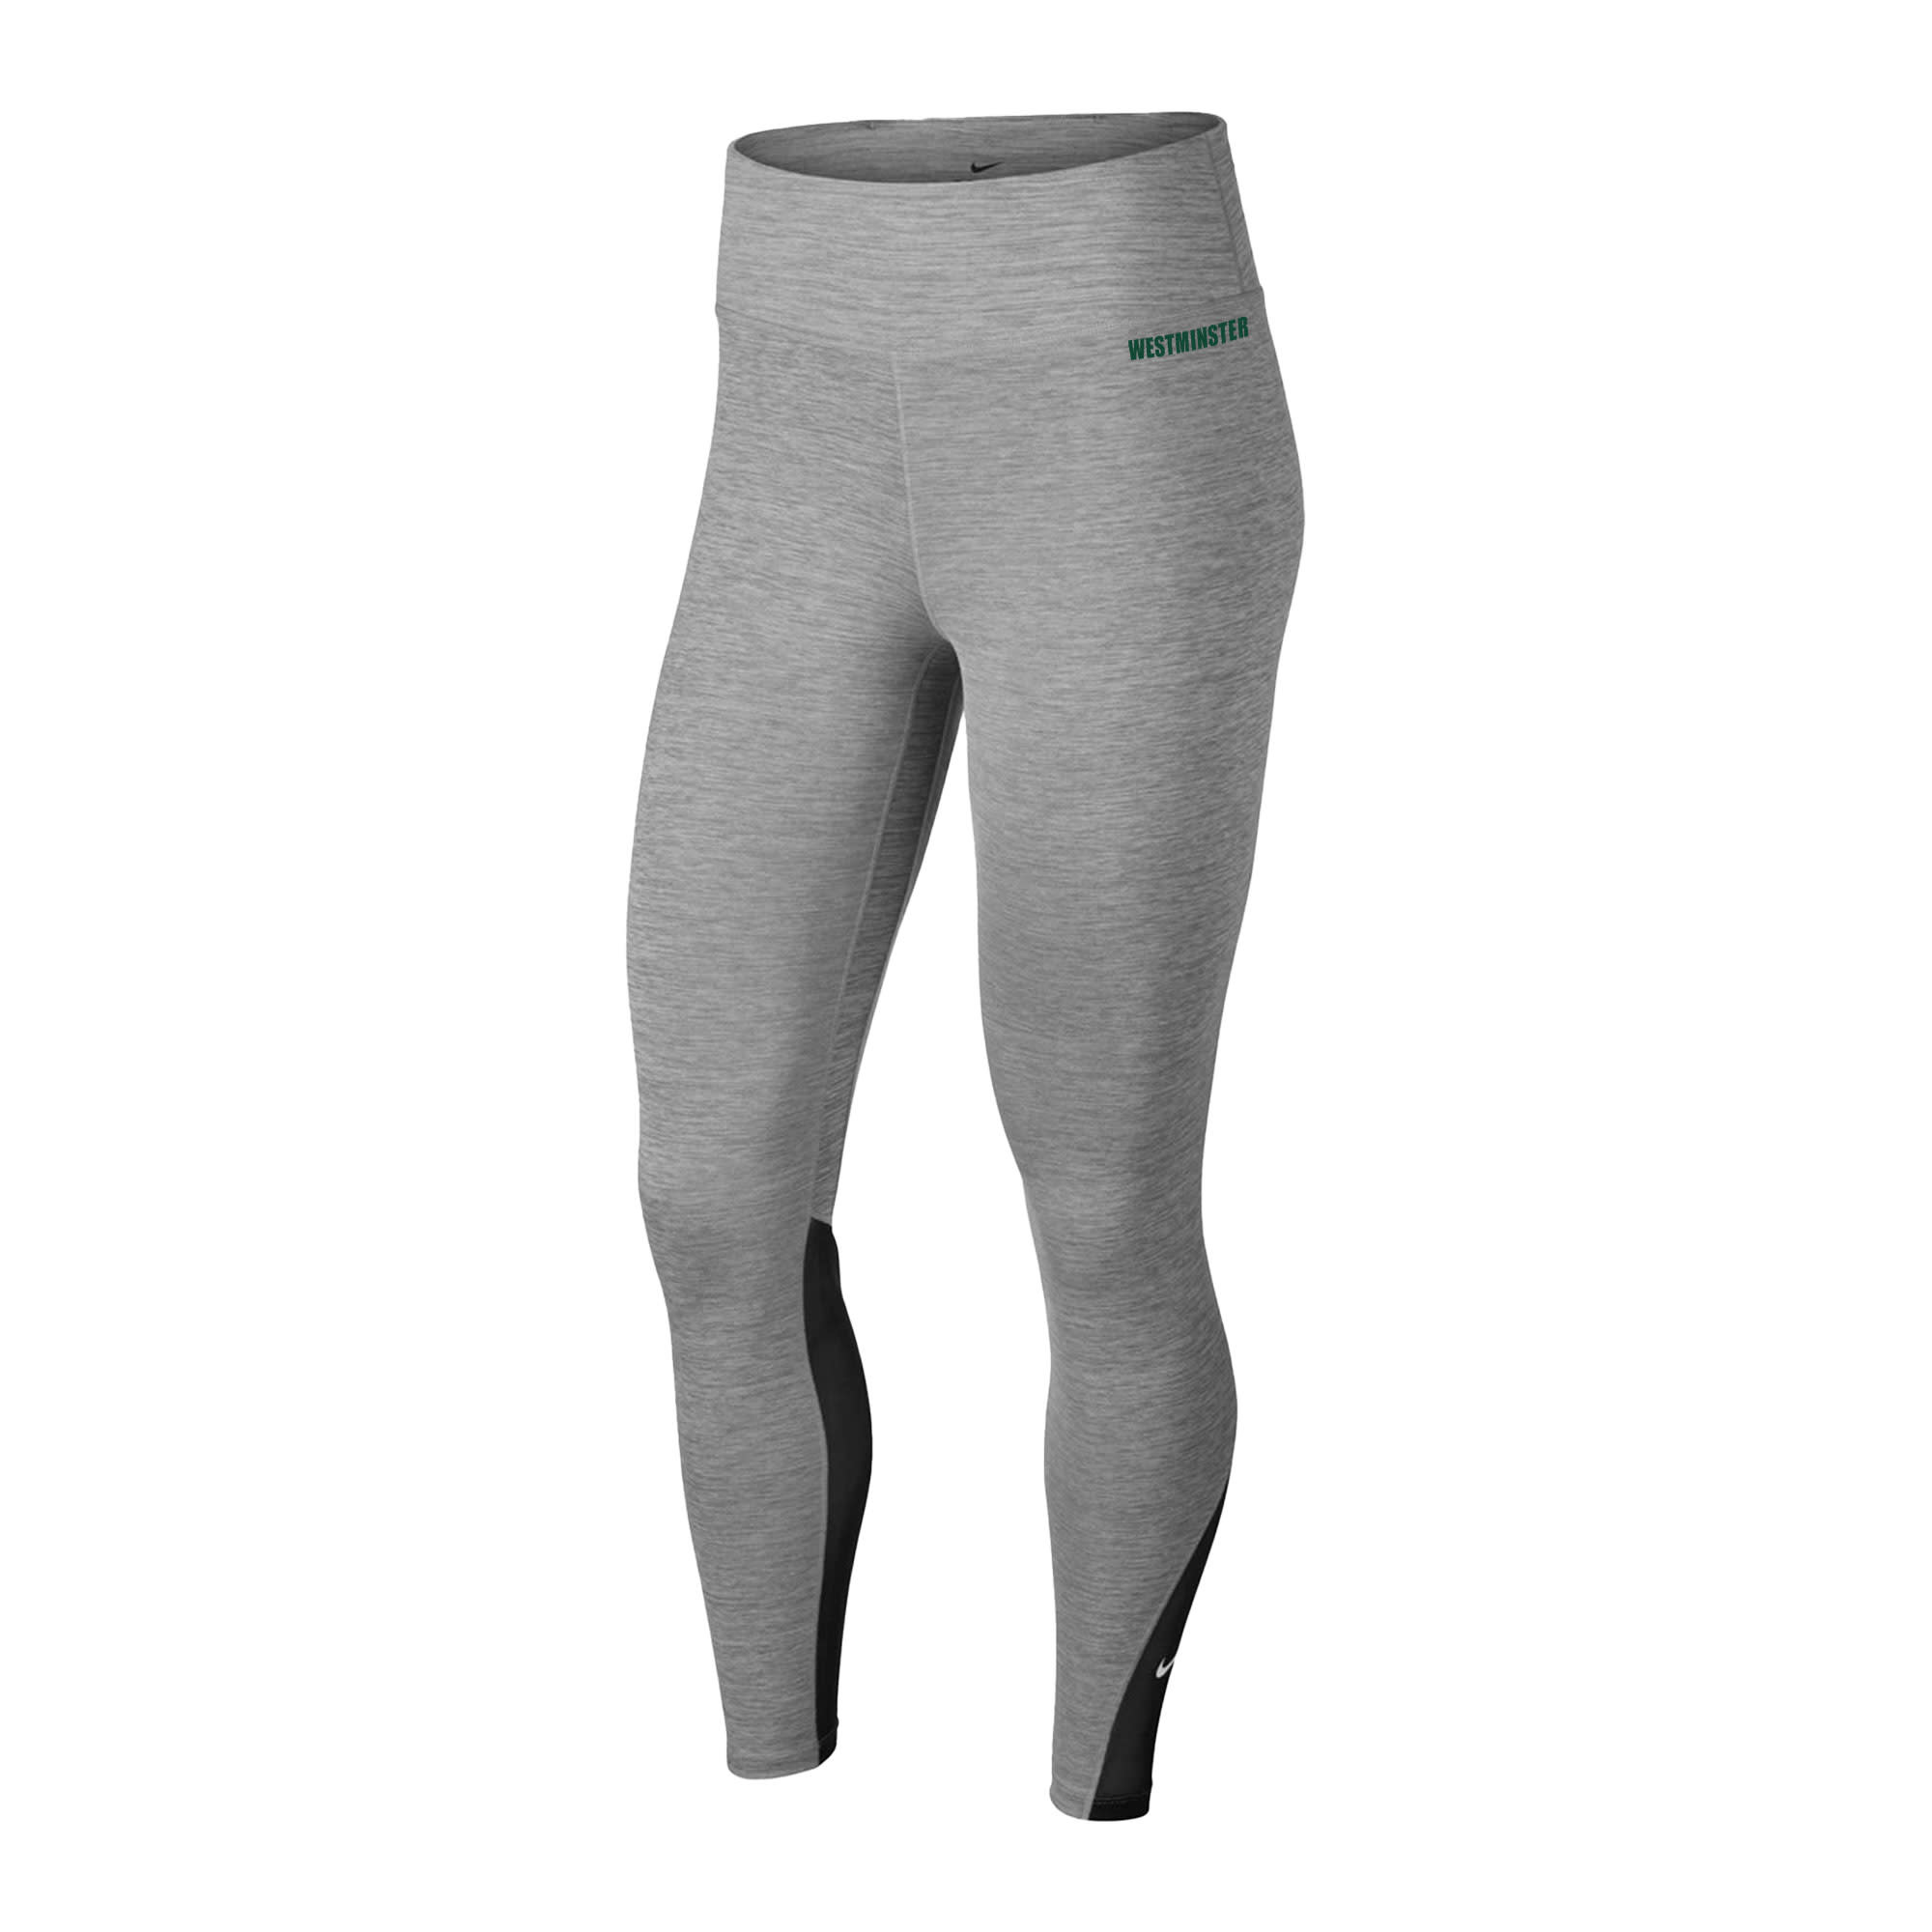 Nike Leggings: Nike One 7/8 Tight- Iron Grey